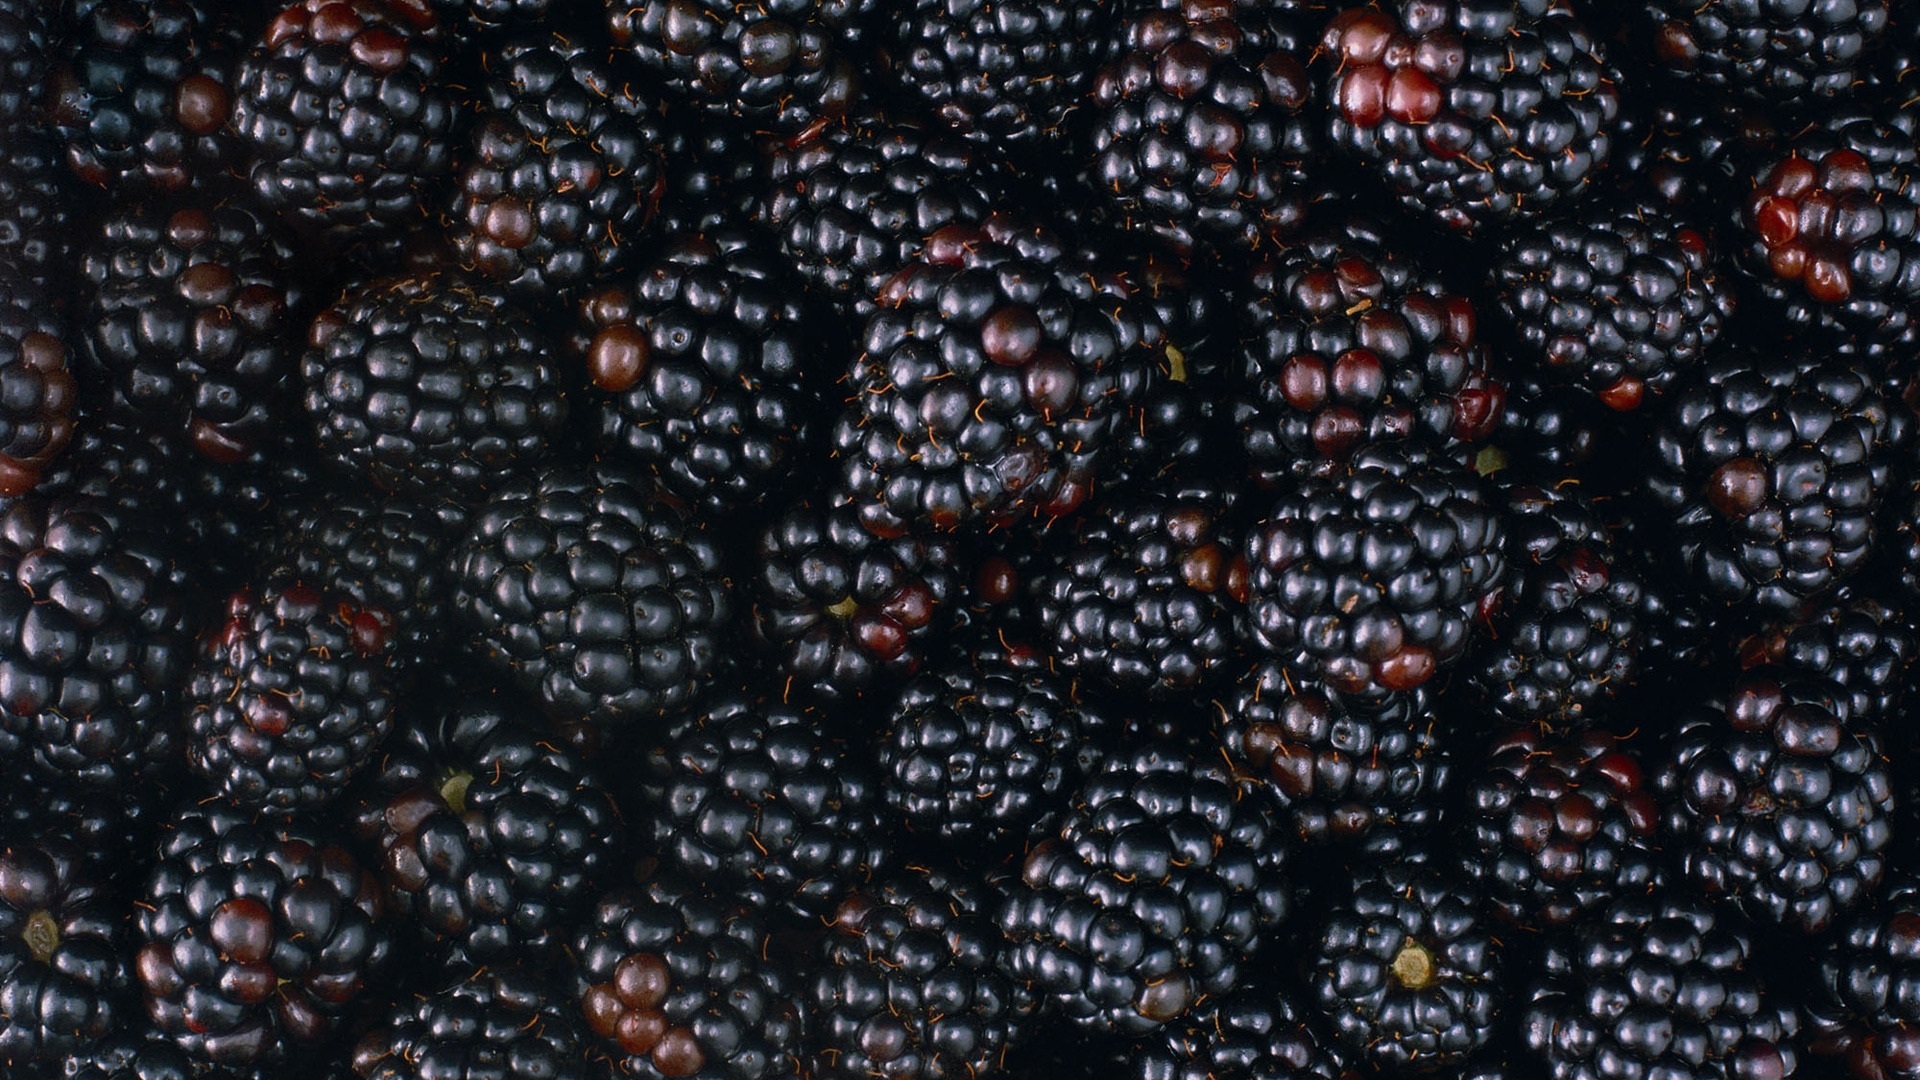 Tasty Blackberries for 1920 x 1080 HDTV 1080p resolution